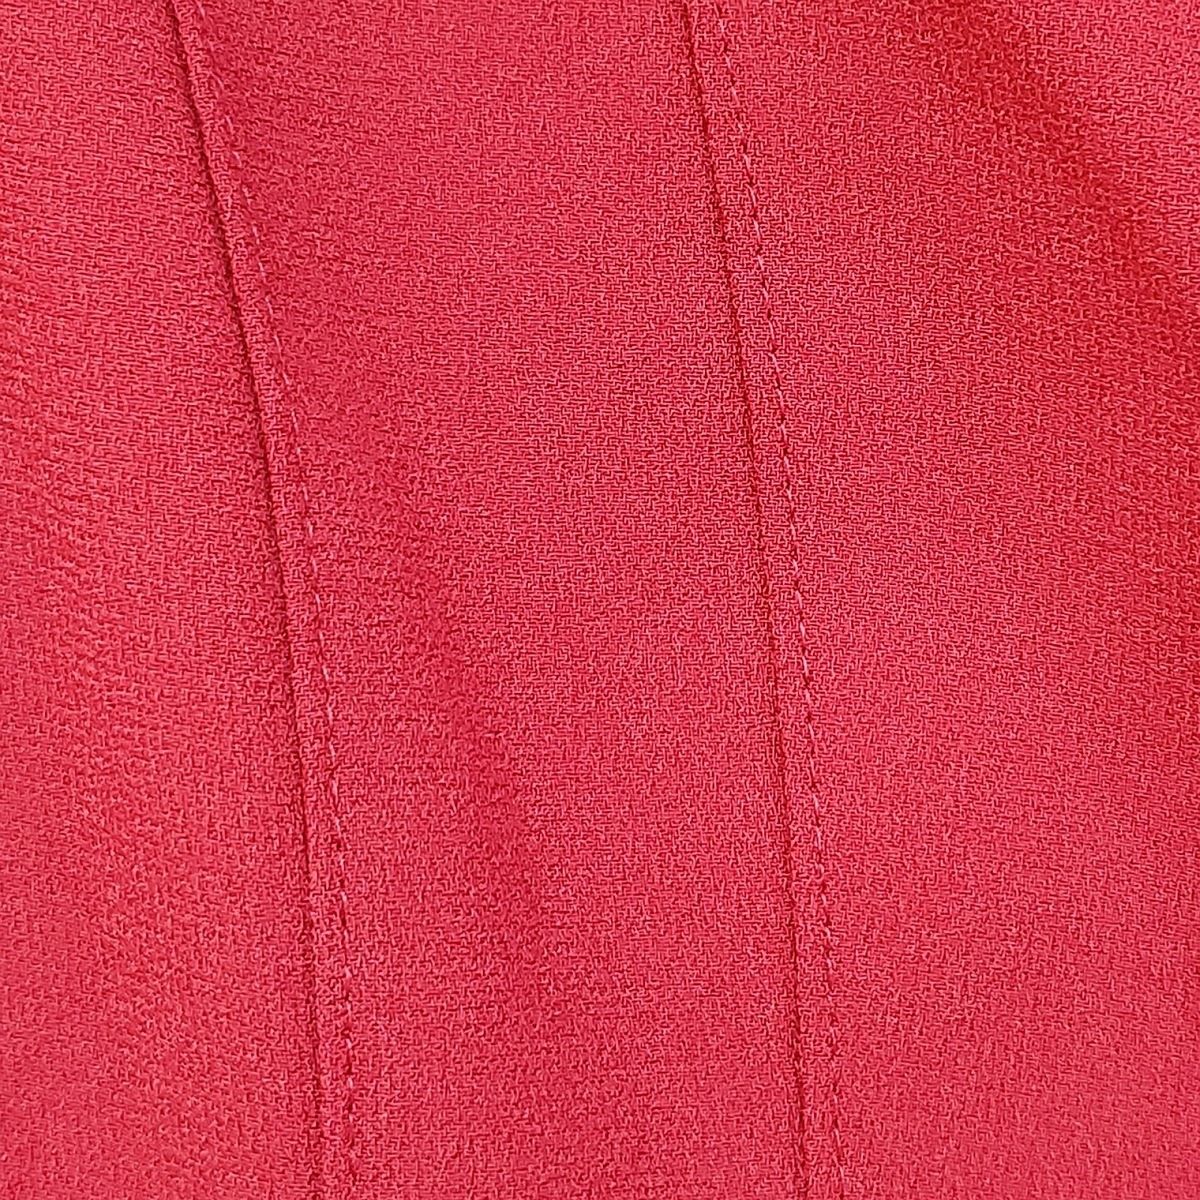 ESCADA(エスカーダ) ジャケット サイズ32 S レディース - レッド 長袖/背面プリーツ/春/秋